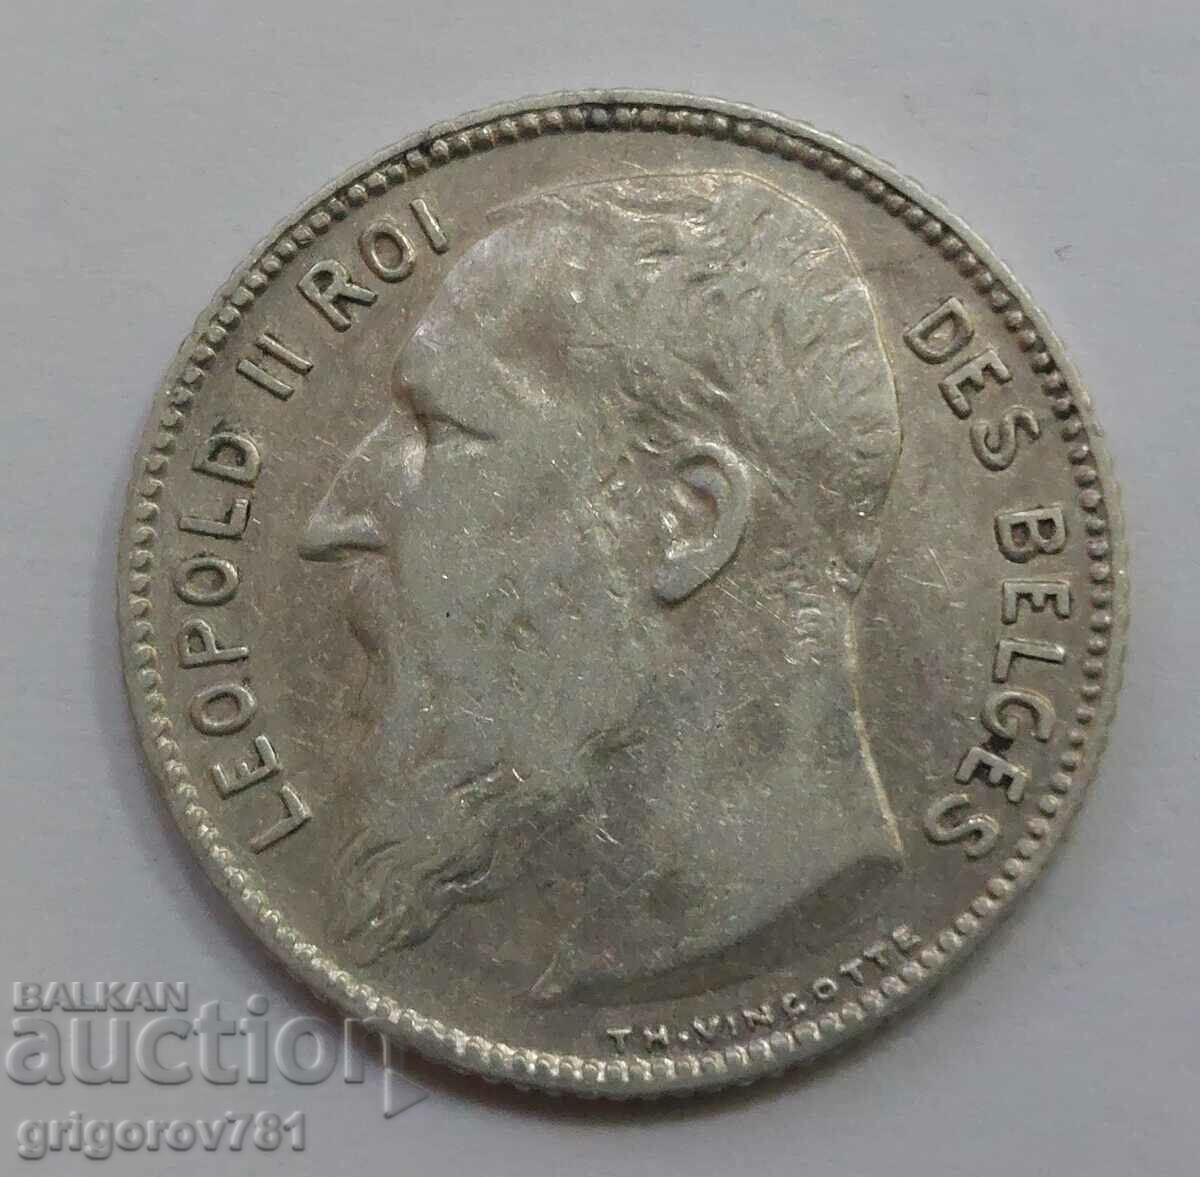 Ασημένιο 1 φράγκου Βέλγιο 1909 - ασημένιο νόμισμα #69